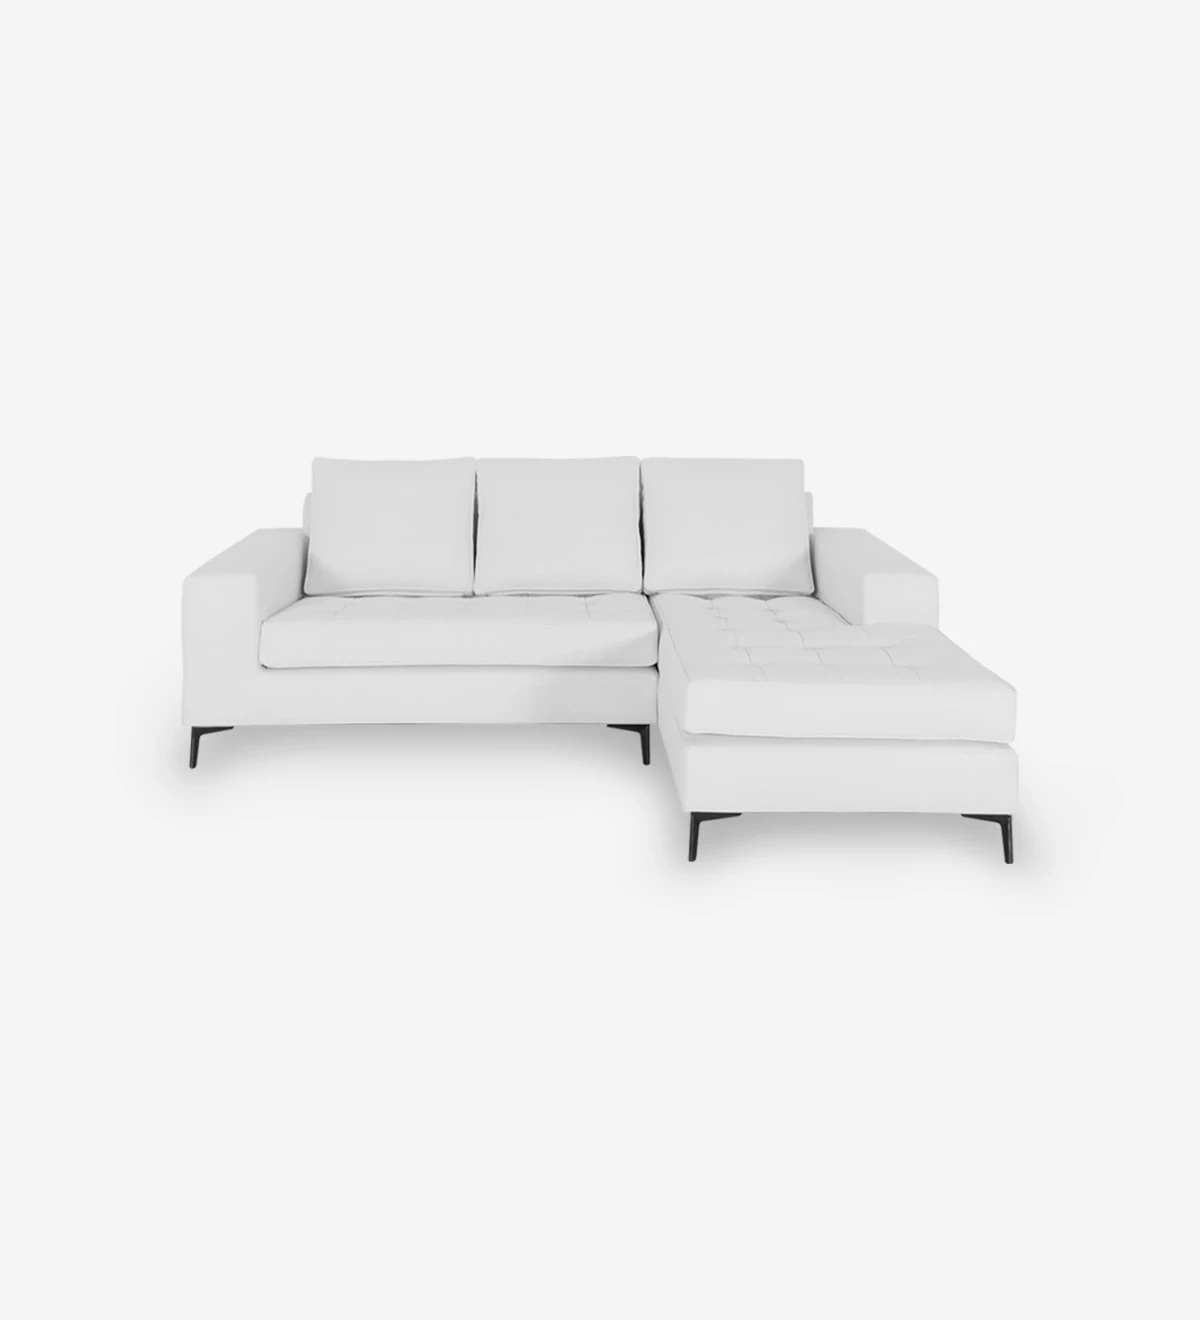 Sofá de 2 plazas con chaise longue, tapizado en ecopiel blanca, con pies de metal lacado en negro.